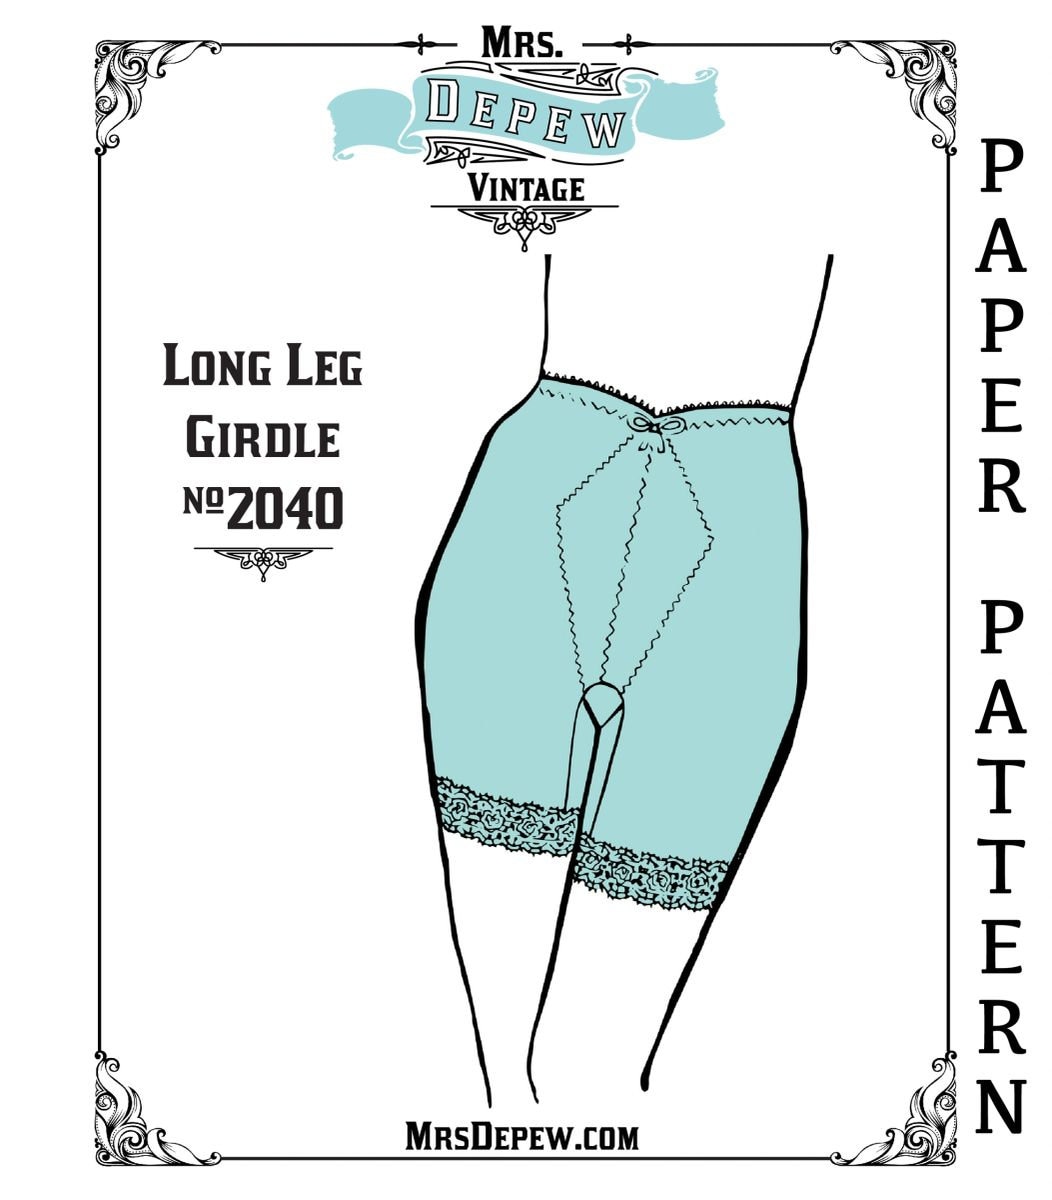 Vintage Unworn Magic Lady Panty Girdle Size Medium Size 6 Beige